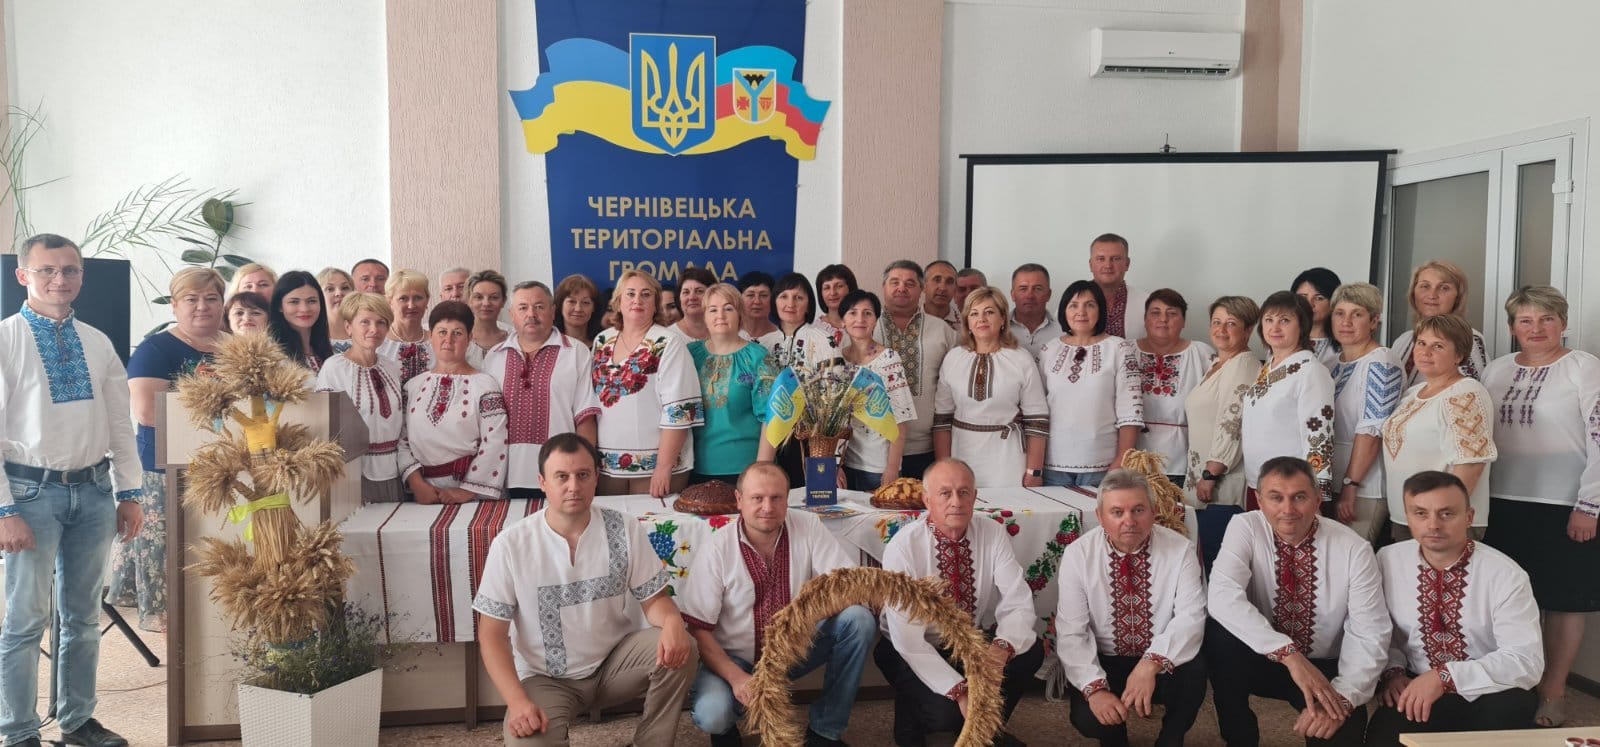 Photo of the Chernivtsi Community team